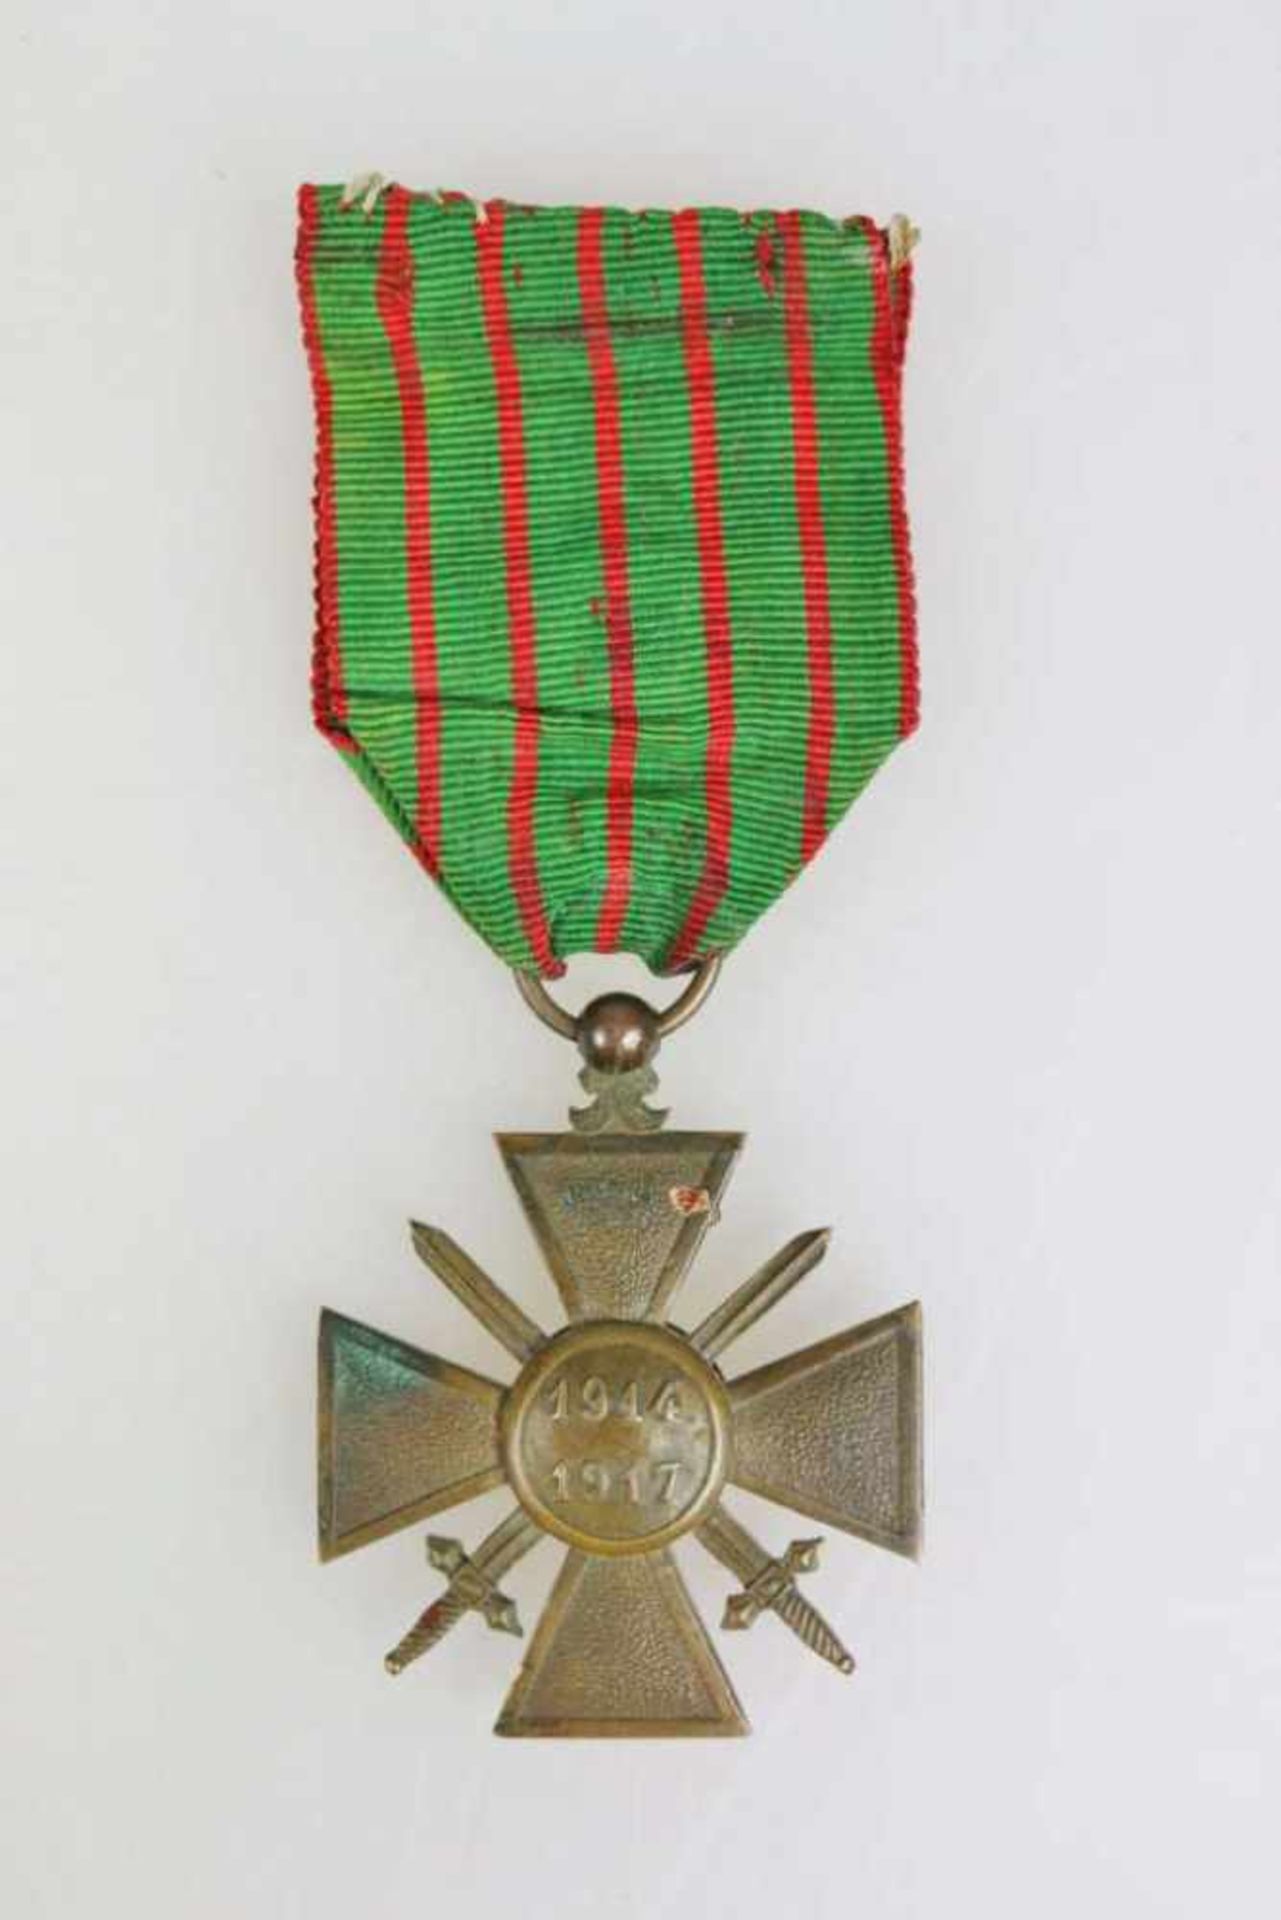 Frankreich WW1, Croix de Guerre, rückseitig datiert 1914/1917 am grünen Band mit roten Streifen - Bild 2 aus 2